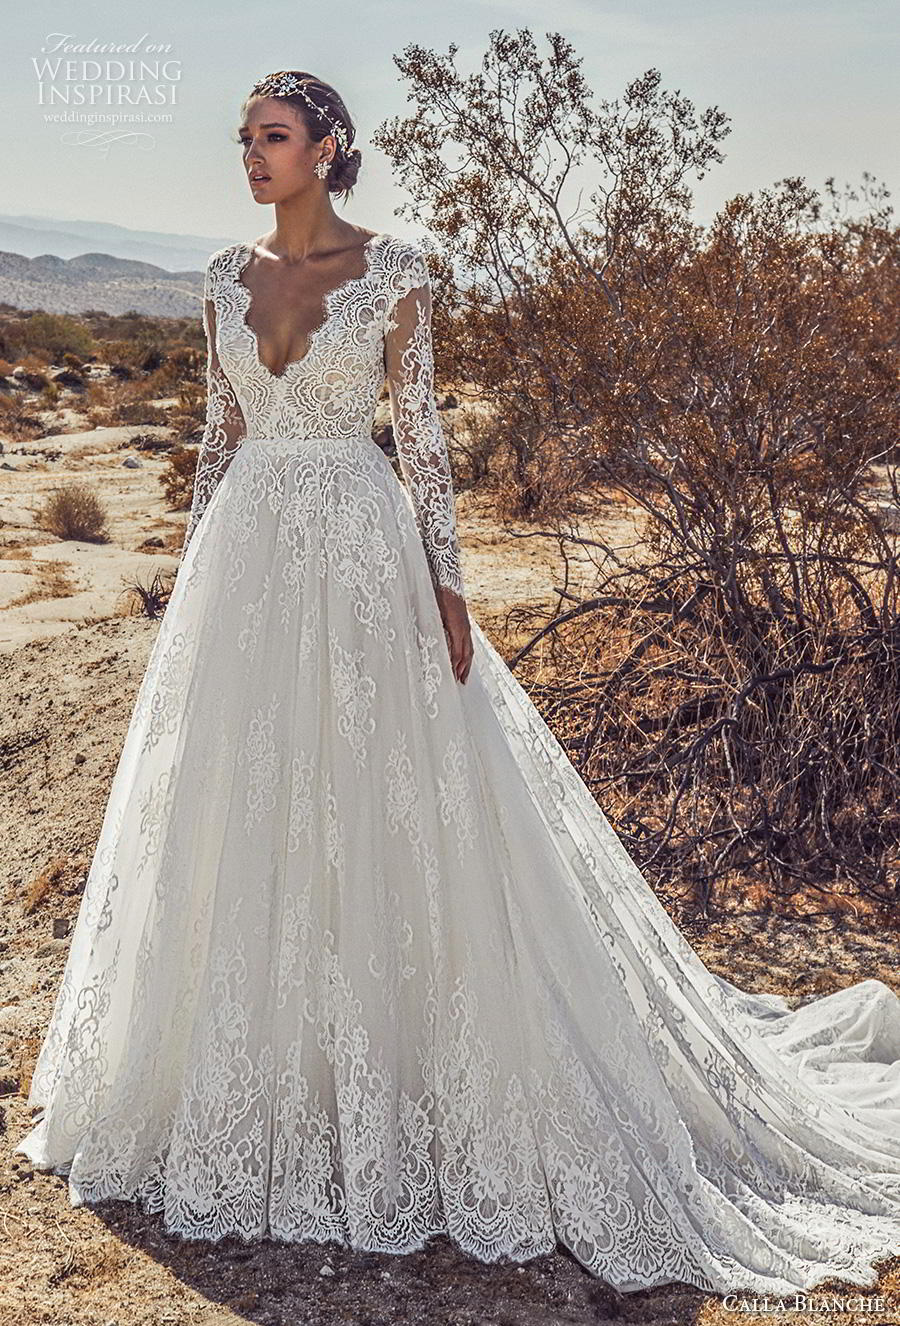 Calla Blanche Spring 2019 Wedding Dresses Wedding Inspirasi